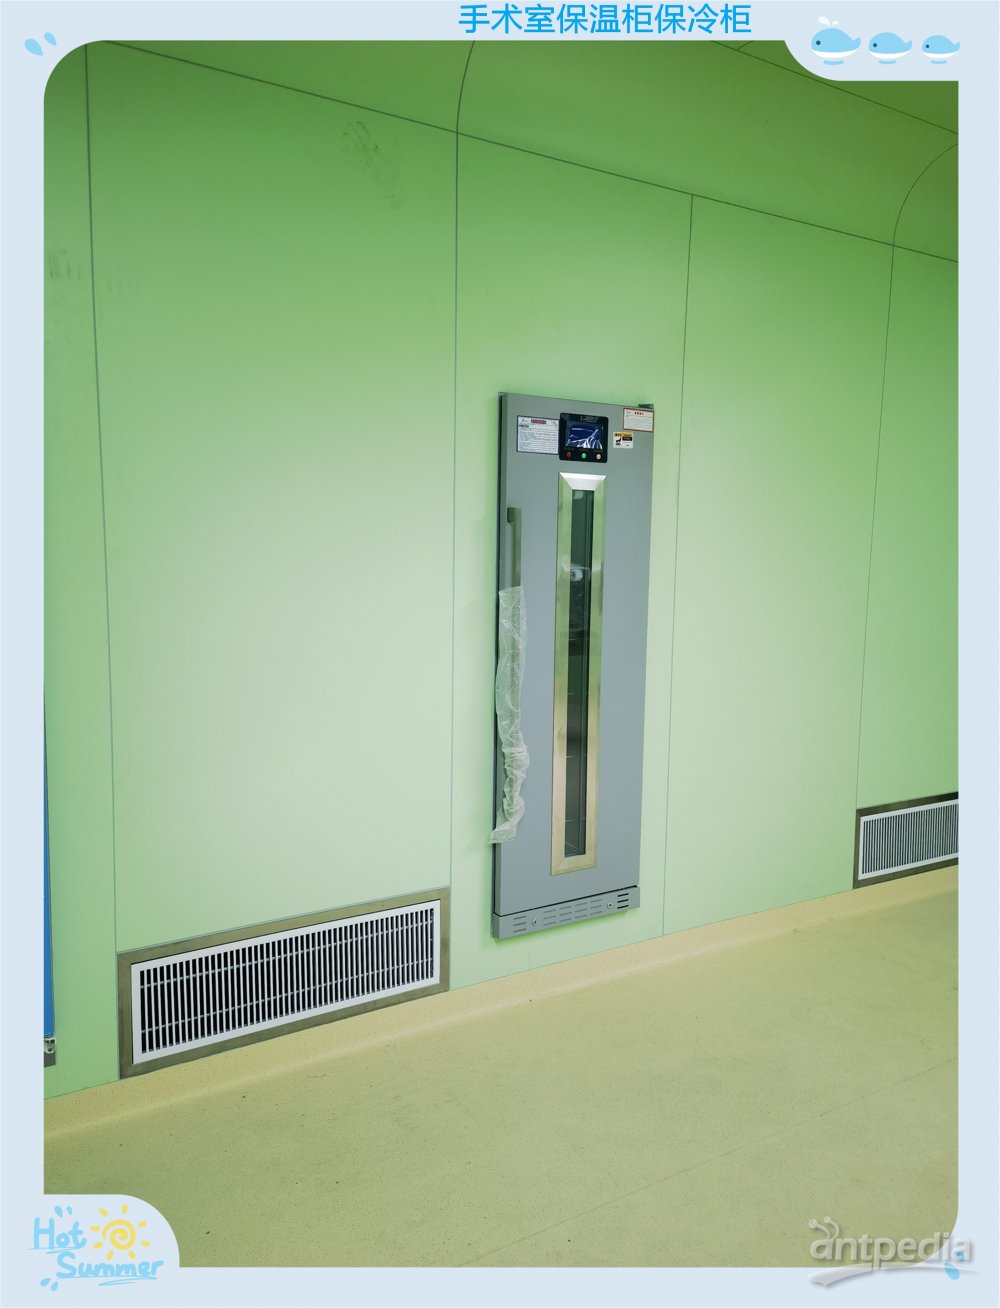 重症监护室(ICU)带锁恒温箱 手术室装备-保冷柜